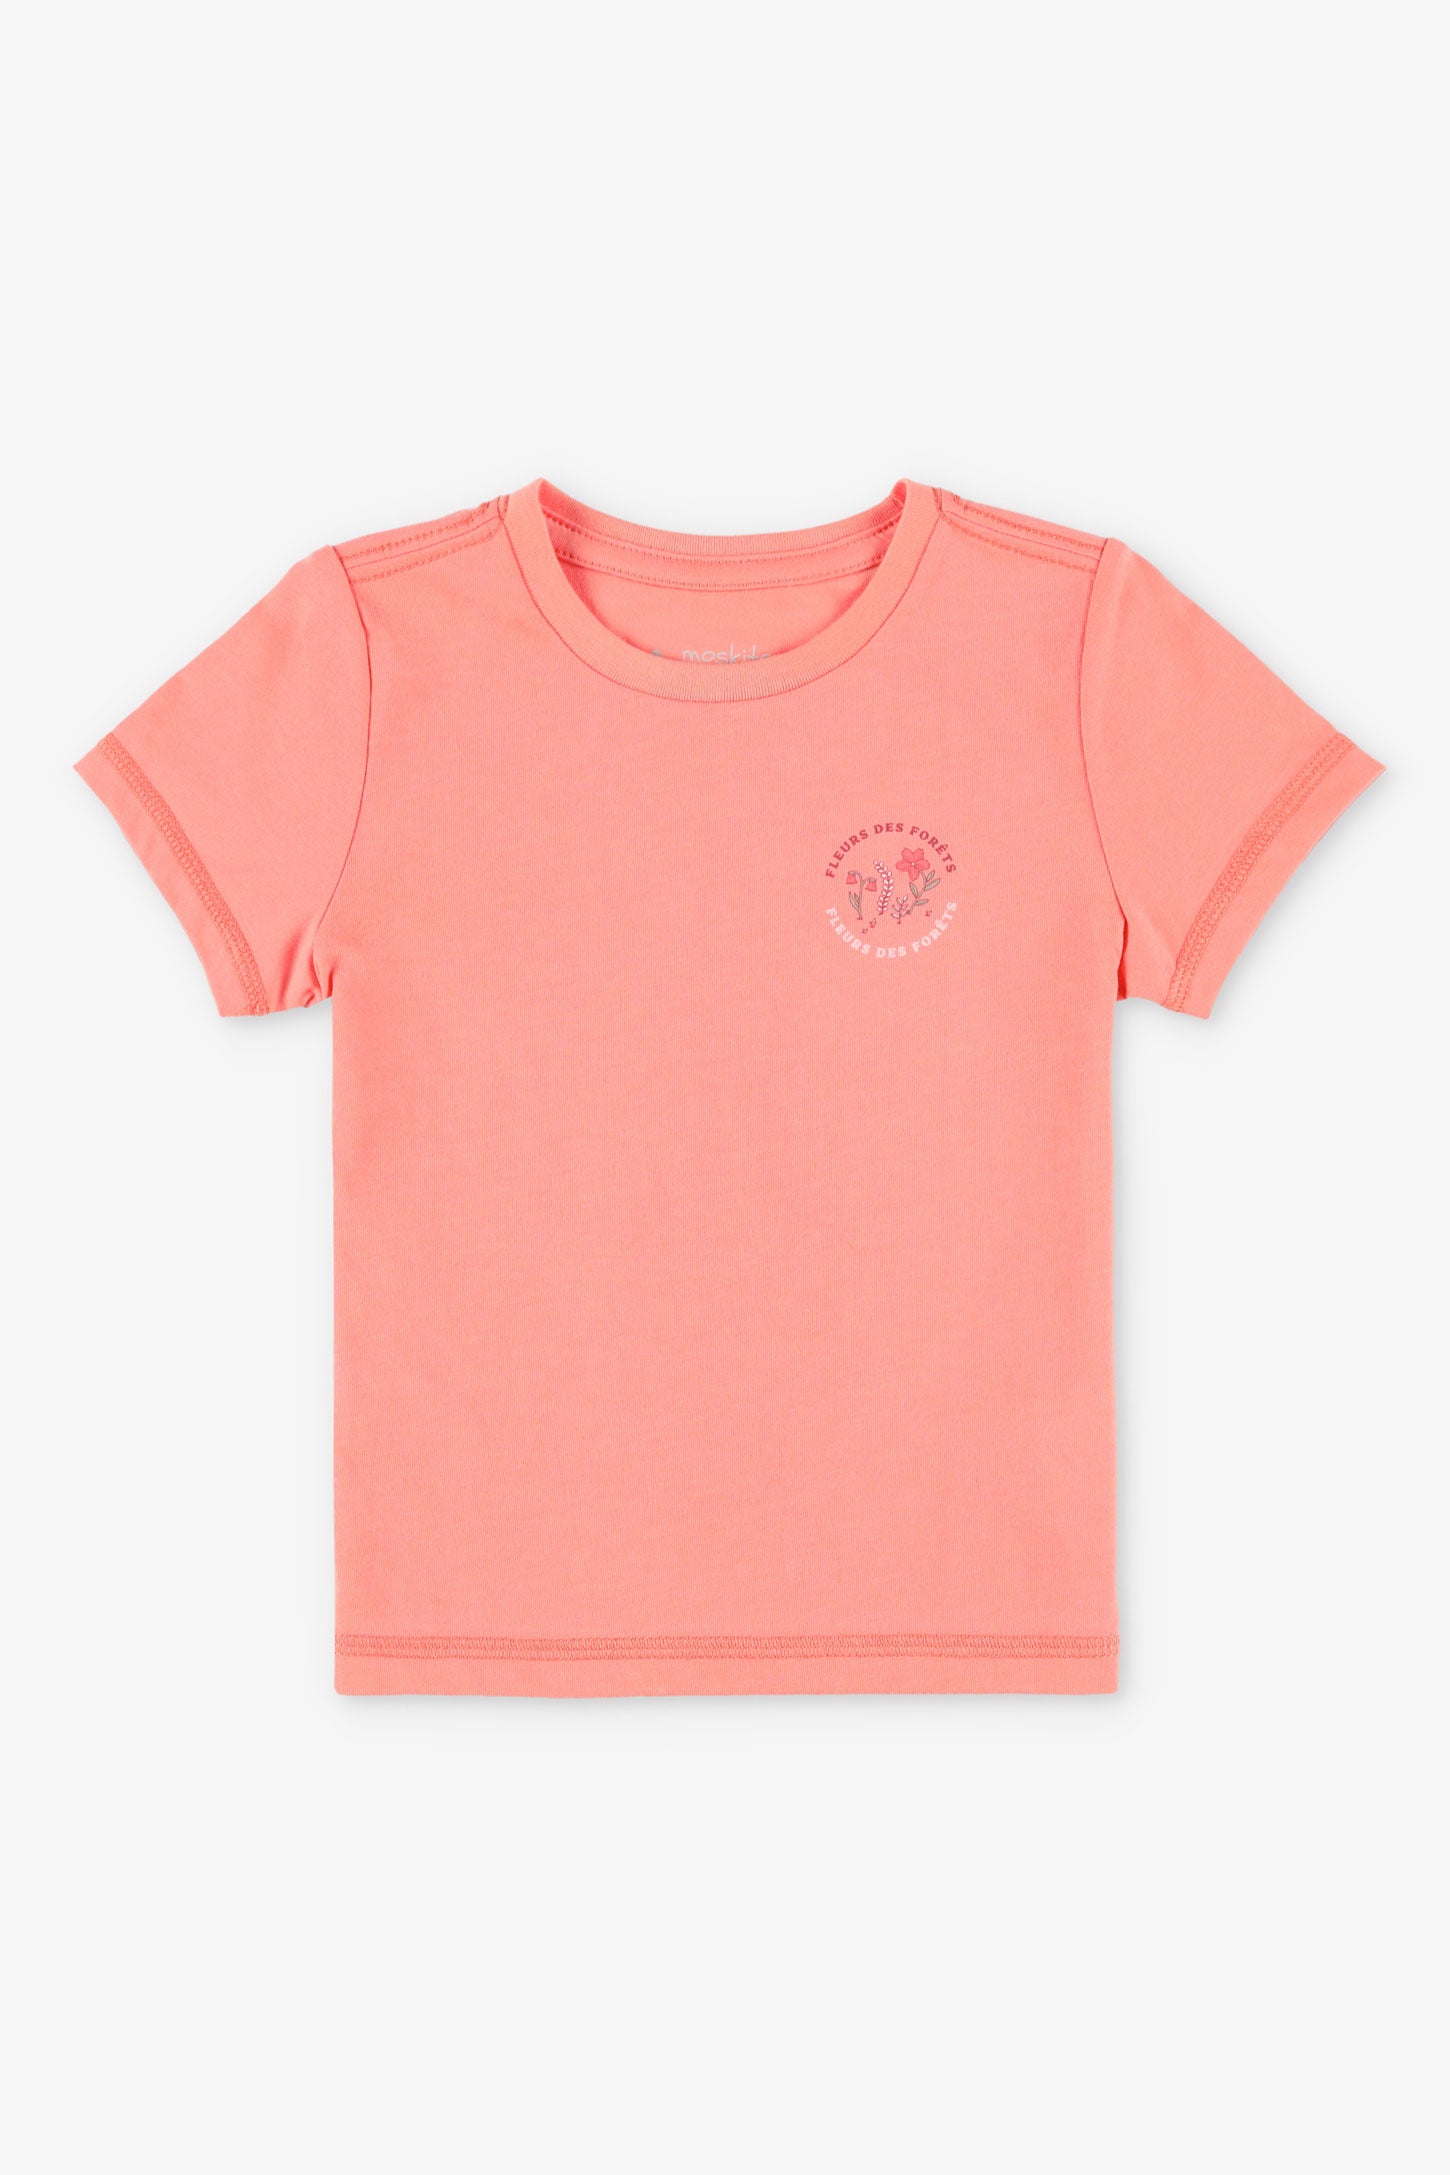 T-shirt col rond coton bio BM, 2/25$ - Bébé fille && ROSE